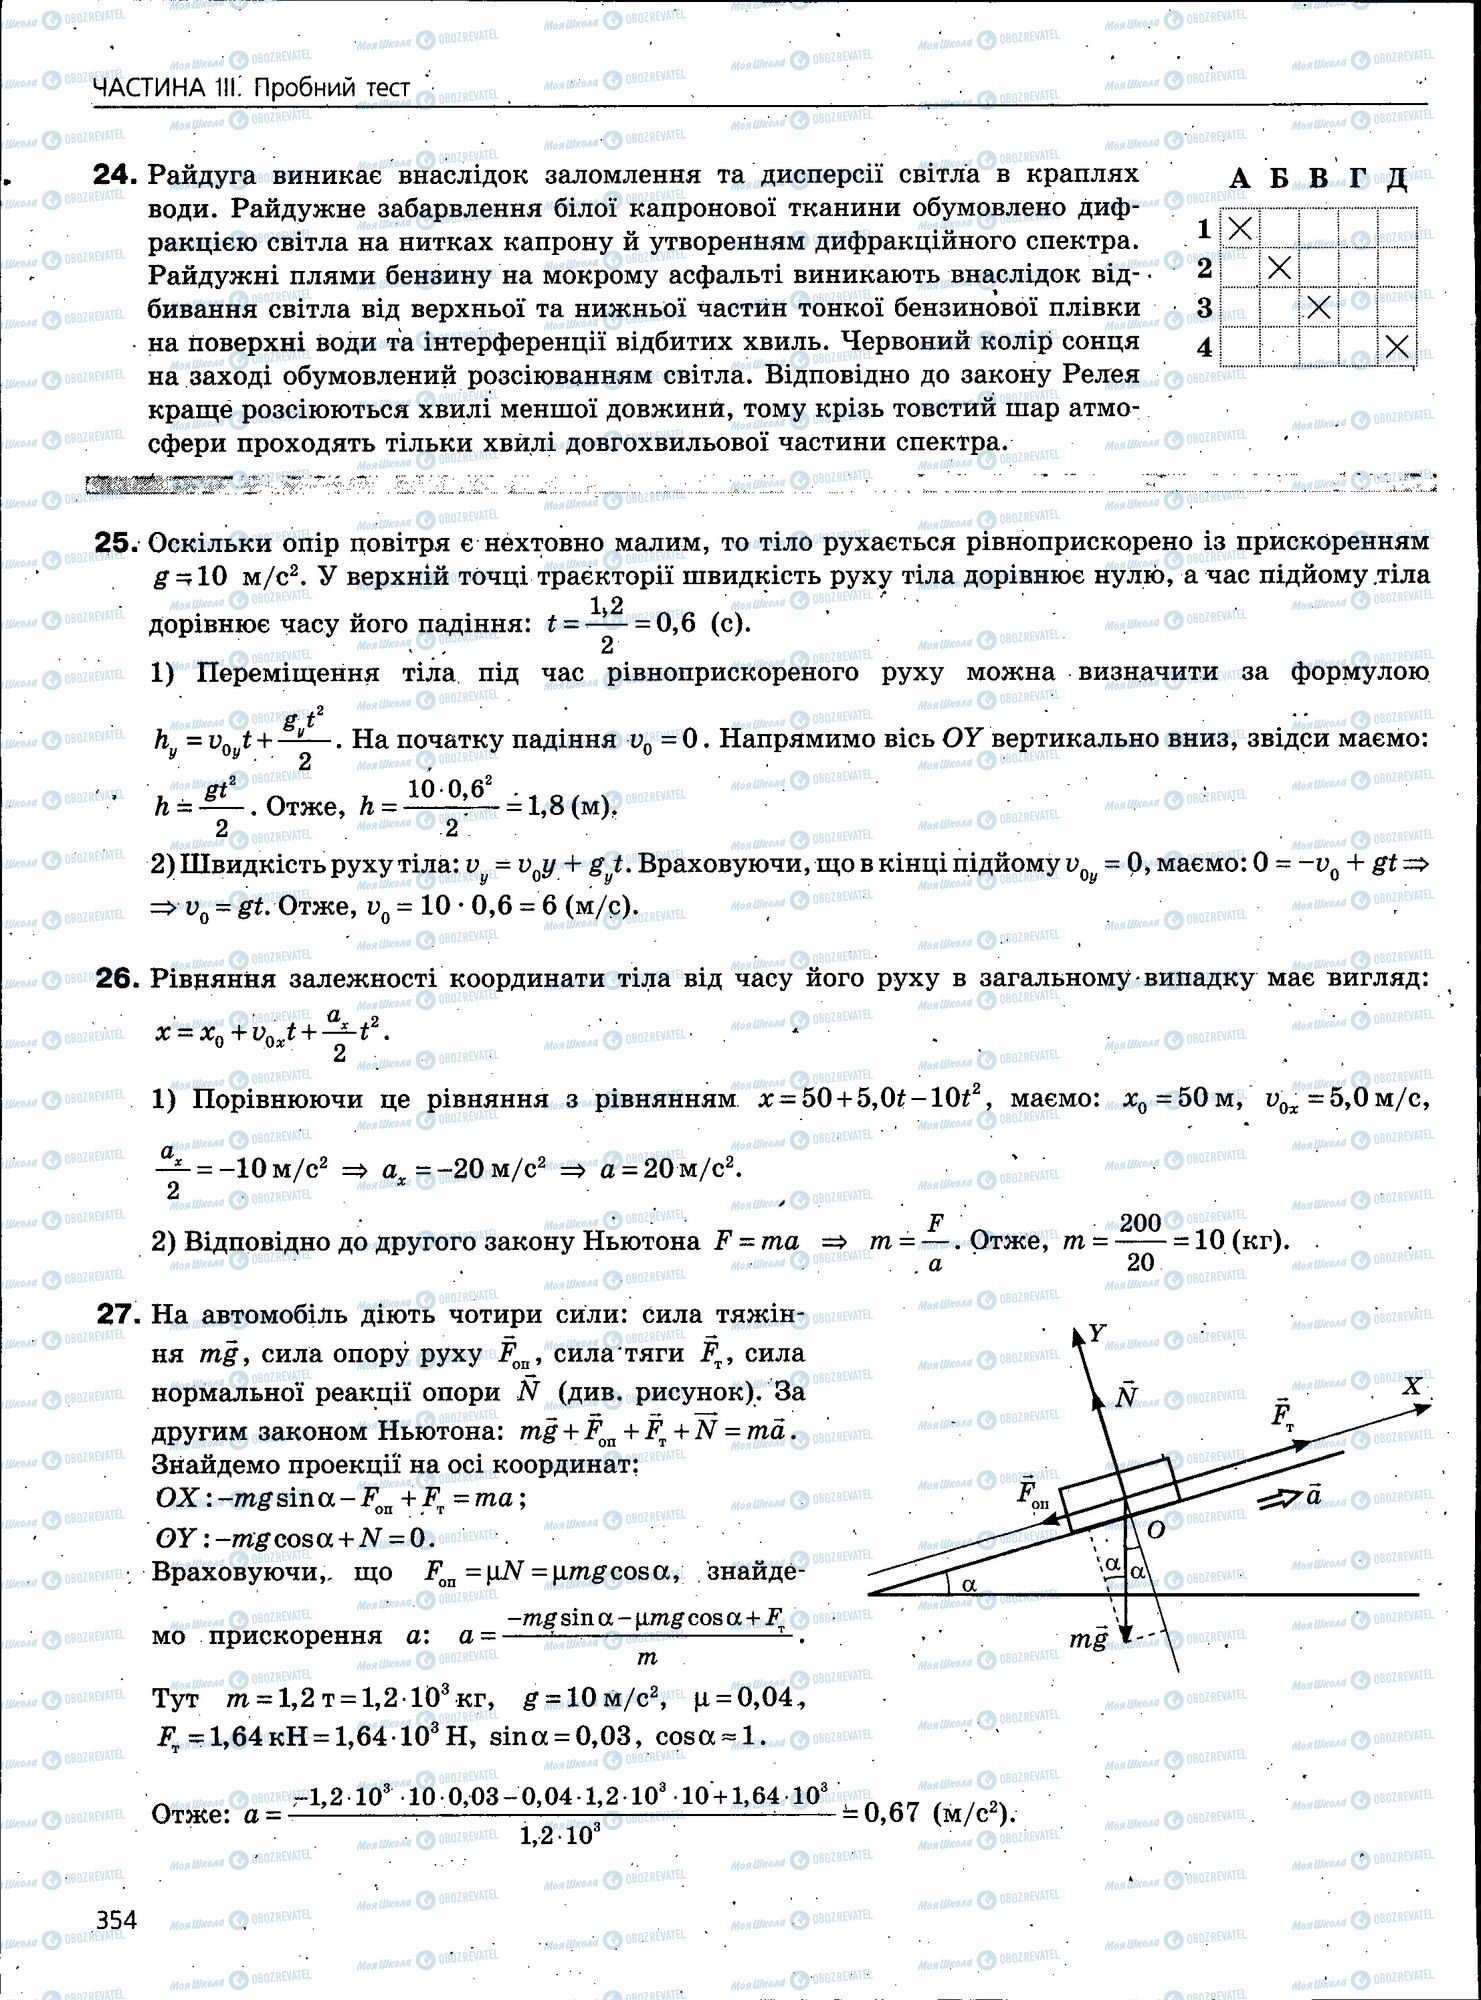 ЗНО Физика 11 класс страница 354